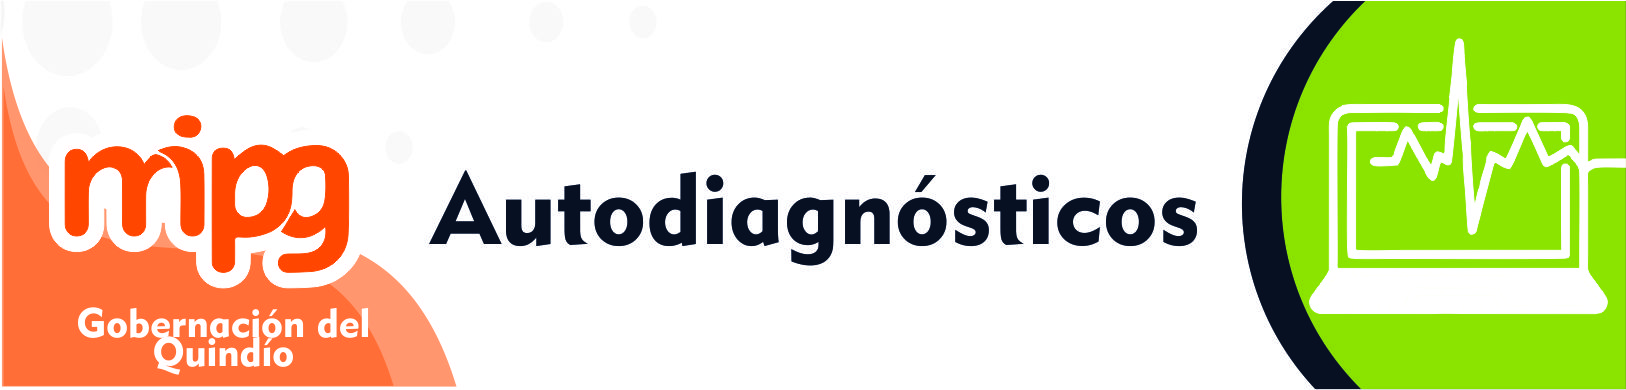 banner autodiagnostic 